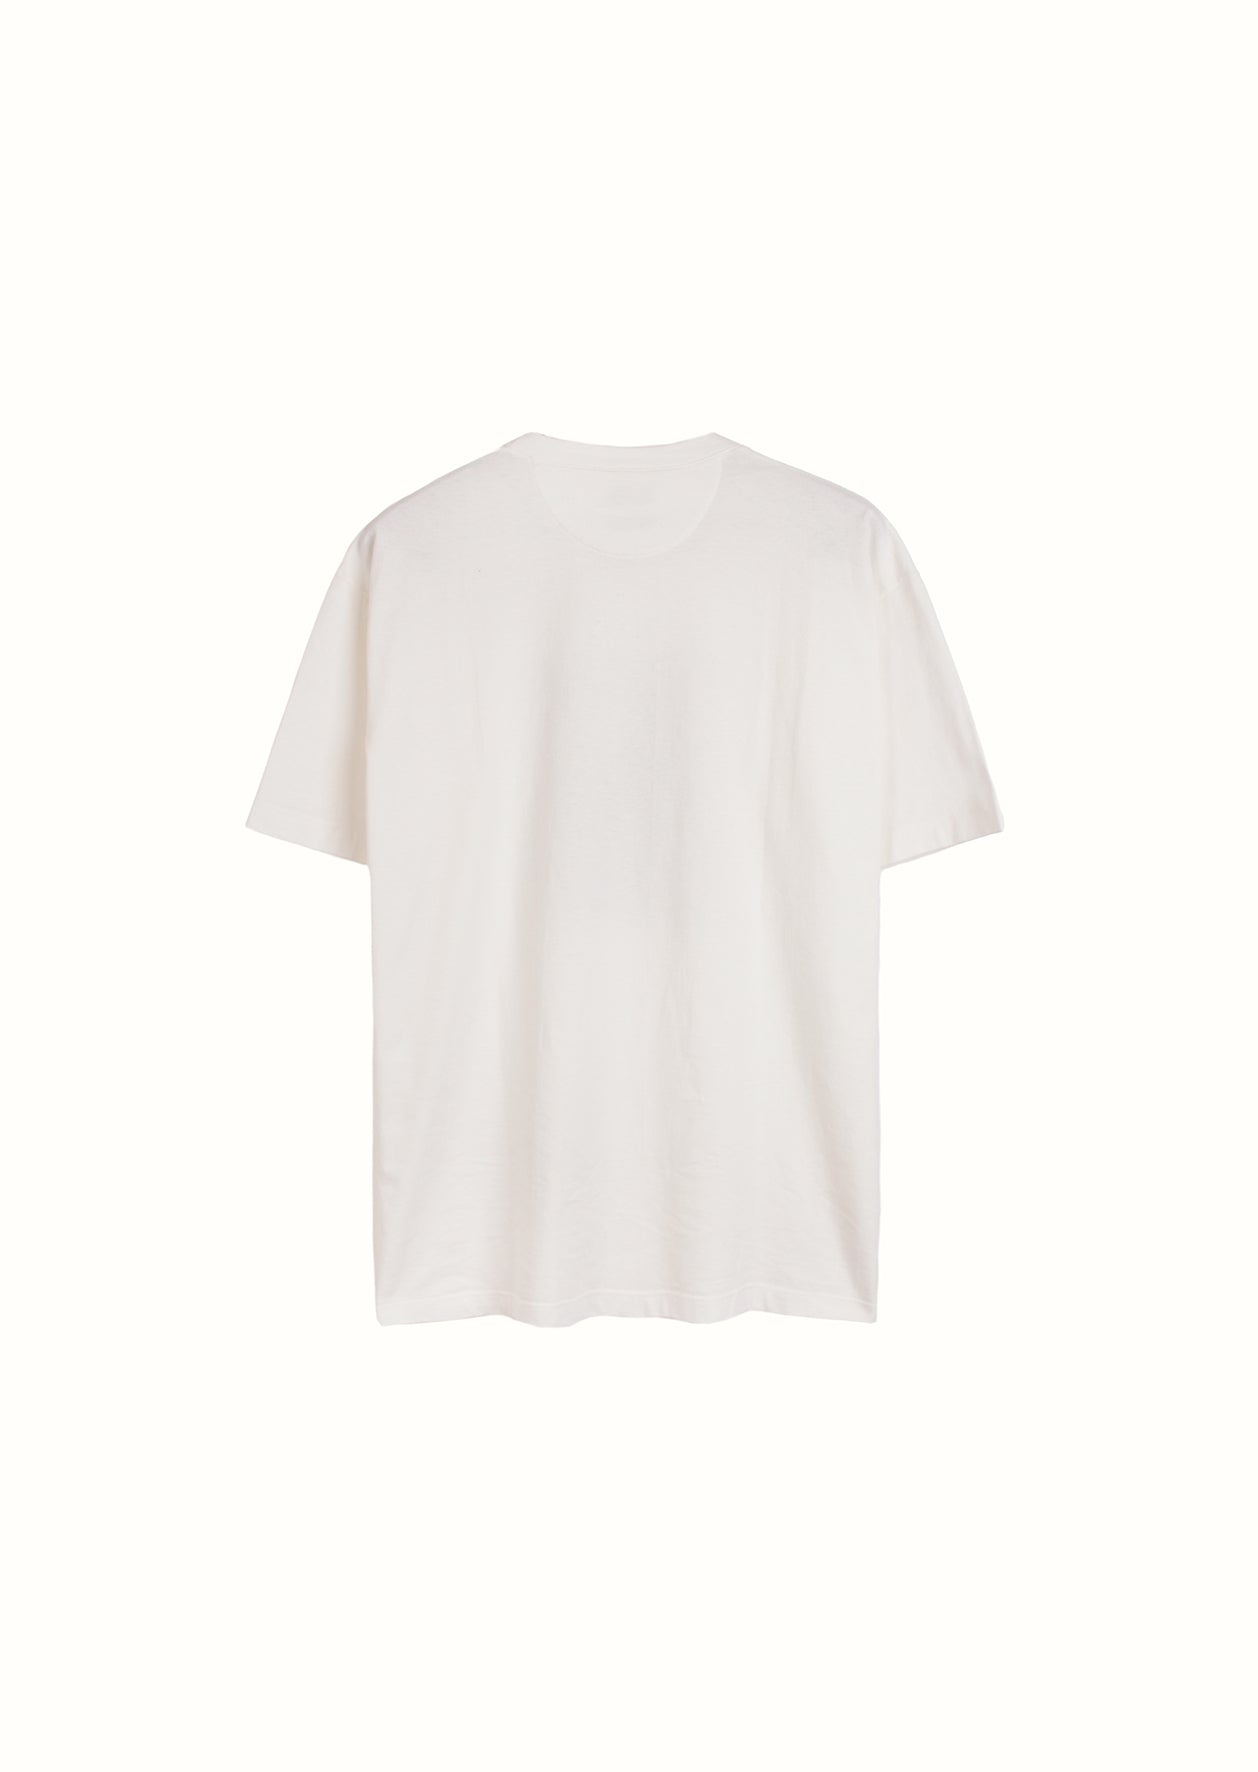 De Bonne Facture - Fall Winter 2022 - Edition 19 - Bear printed t-shirt - Organic cotton jersey - Bear print